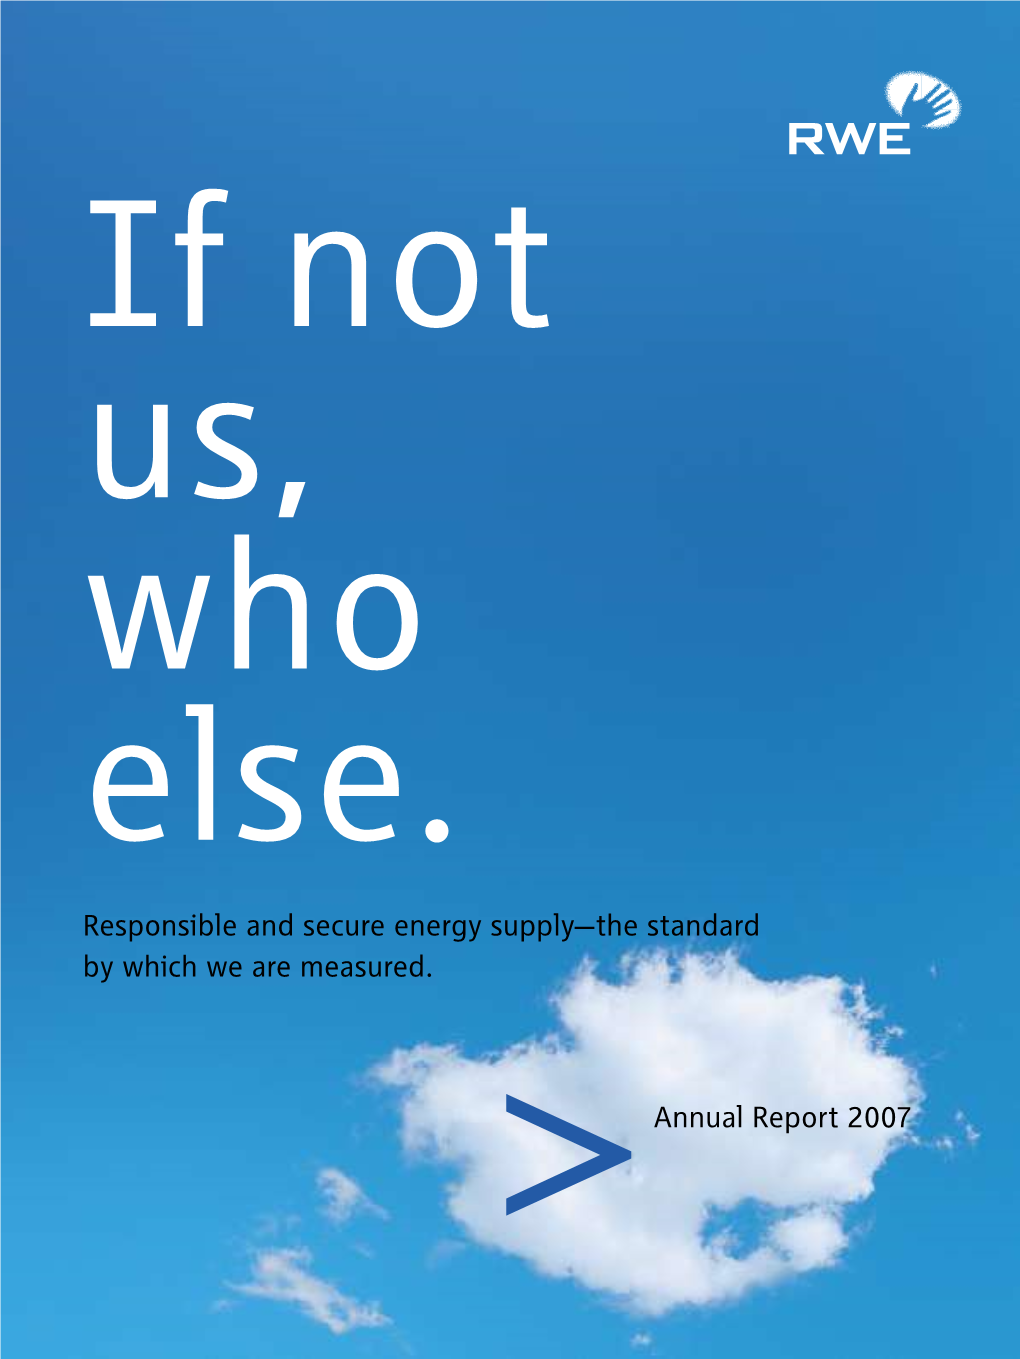 Annual Report 2007 (PDF)